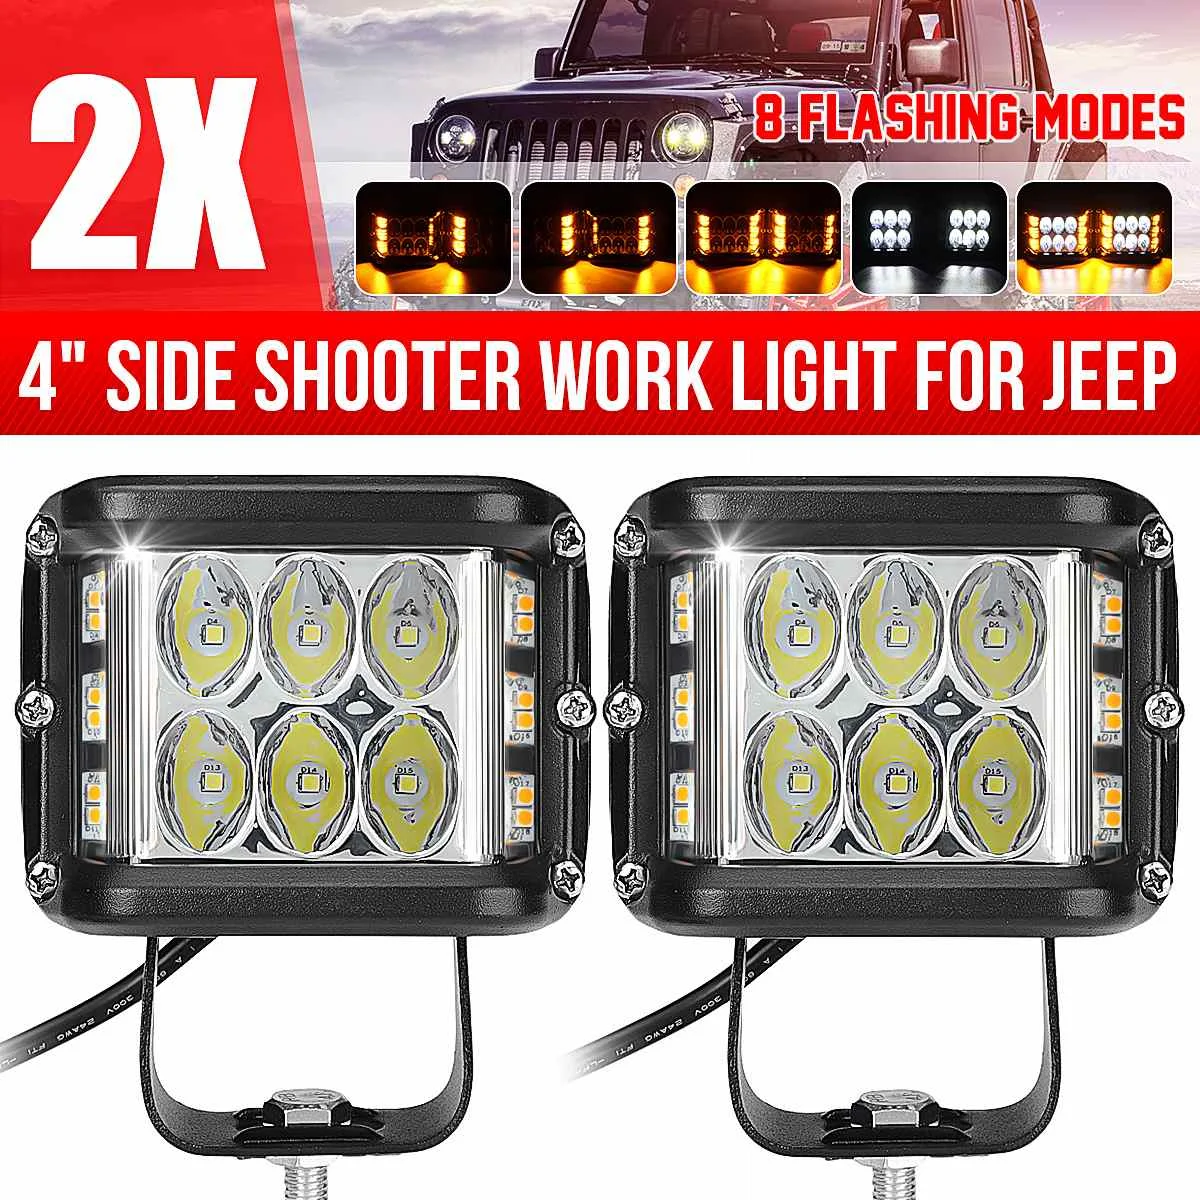 

2x 4 inch LED Car Work Light Bar Cube Side Shooter LED Light Bar Pod Strobe Lamp Universal Truck SUV Work Flash Light 8 Modes